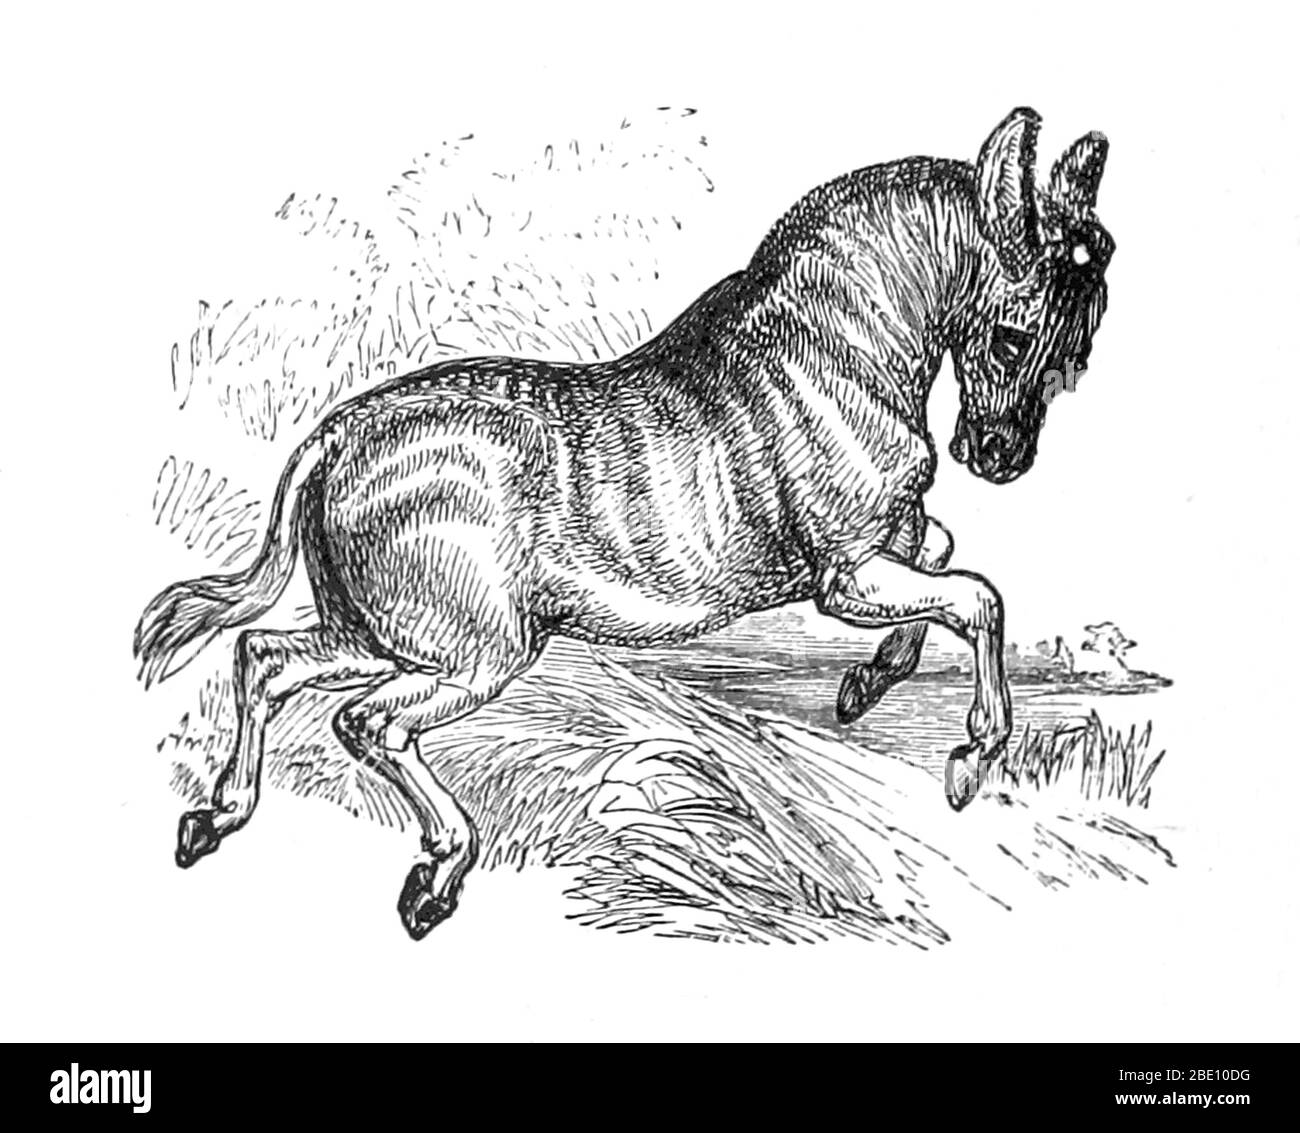 Un'illustrazione di un quagga tratta da 1874. Quagga (Equus quagga quagga) è una sottospecie estinta della zebra pianeggiante che visse in Sudafrica fino al XIX secolo. Si pensava da tempo che fosse una specie distinta, ma gli studi genetici hanno dimostrato che era la sottospecie più meridionale della zebra pianeggiante. È considerato particolarmente vicino alla zebra di Burchell. Il suo nome deriva dalla sua chiamata, che suona come 'kwa-ha-ha'. L'ultimo esemplare prigioniero morì ad Amsterdam il 12 agosto 1883. Nel 1984, il quagga fu il primo animale estinto ad avere analizzato il suo DNA, e il progetto Quagga sta provando t Foto Stock